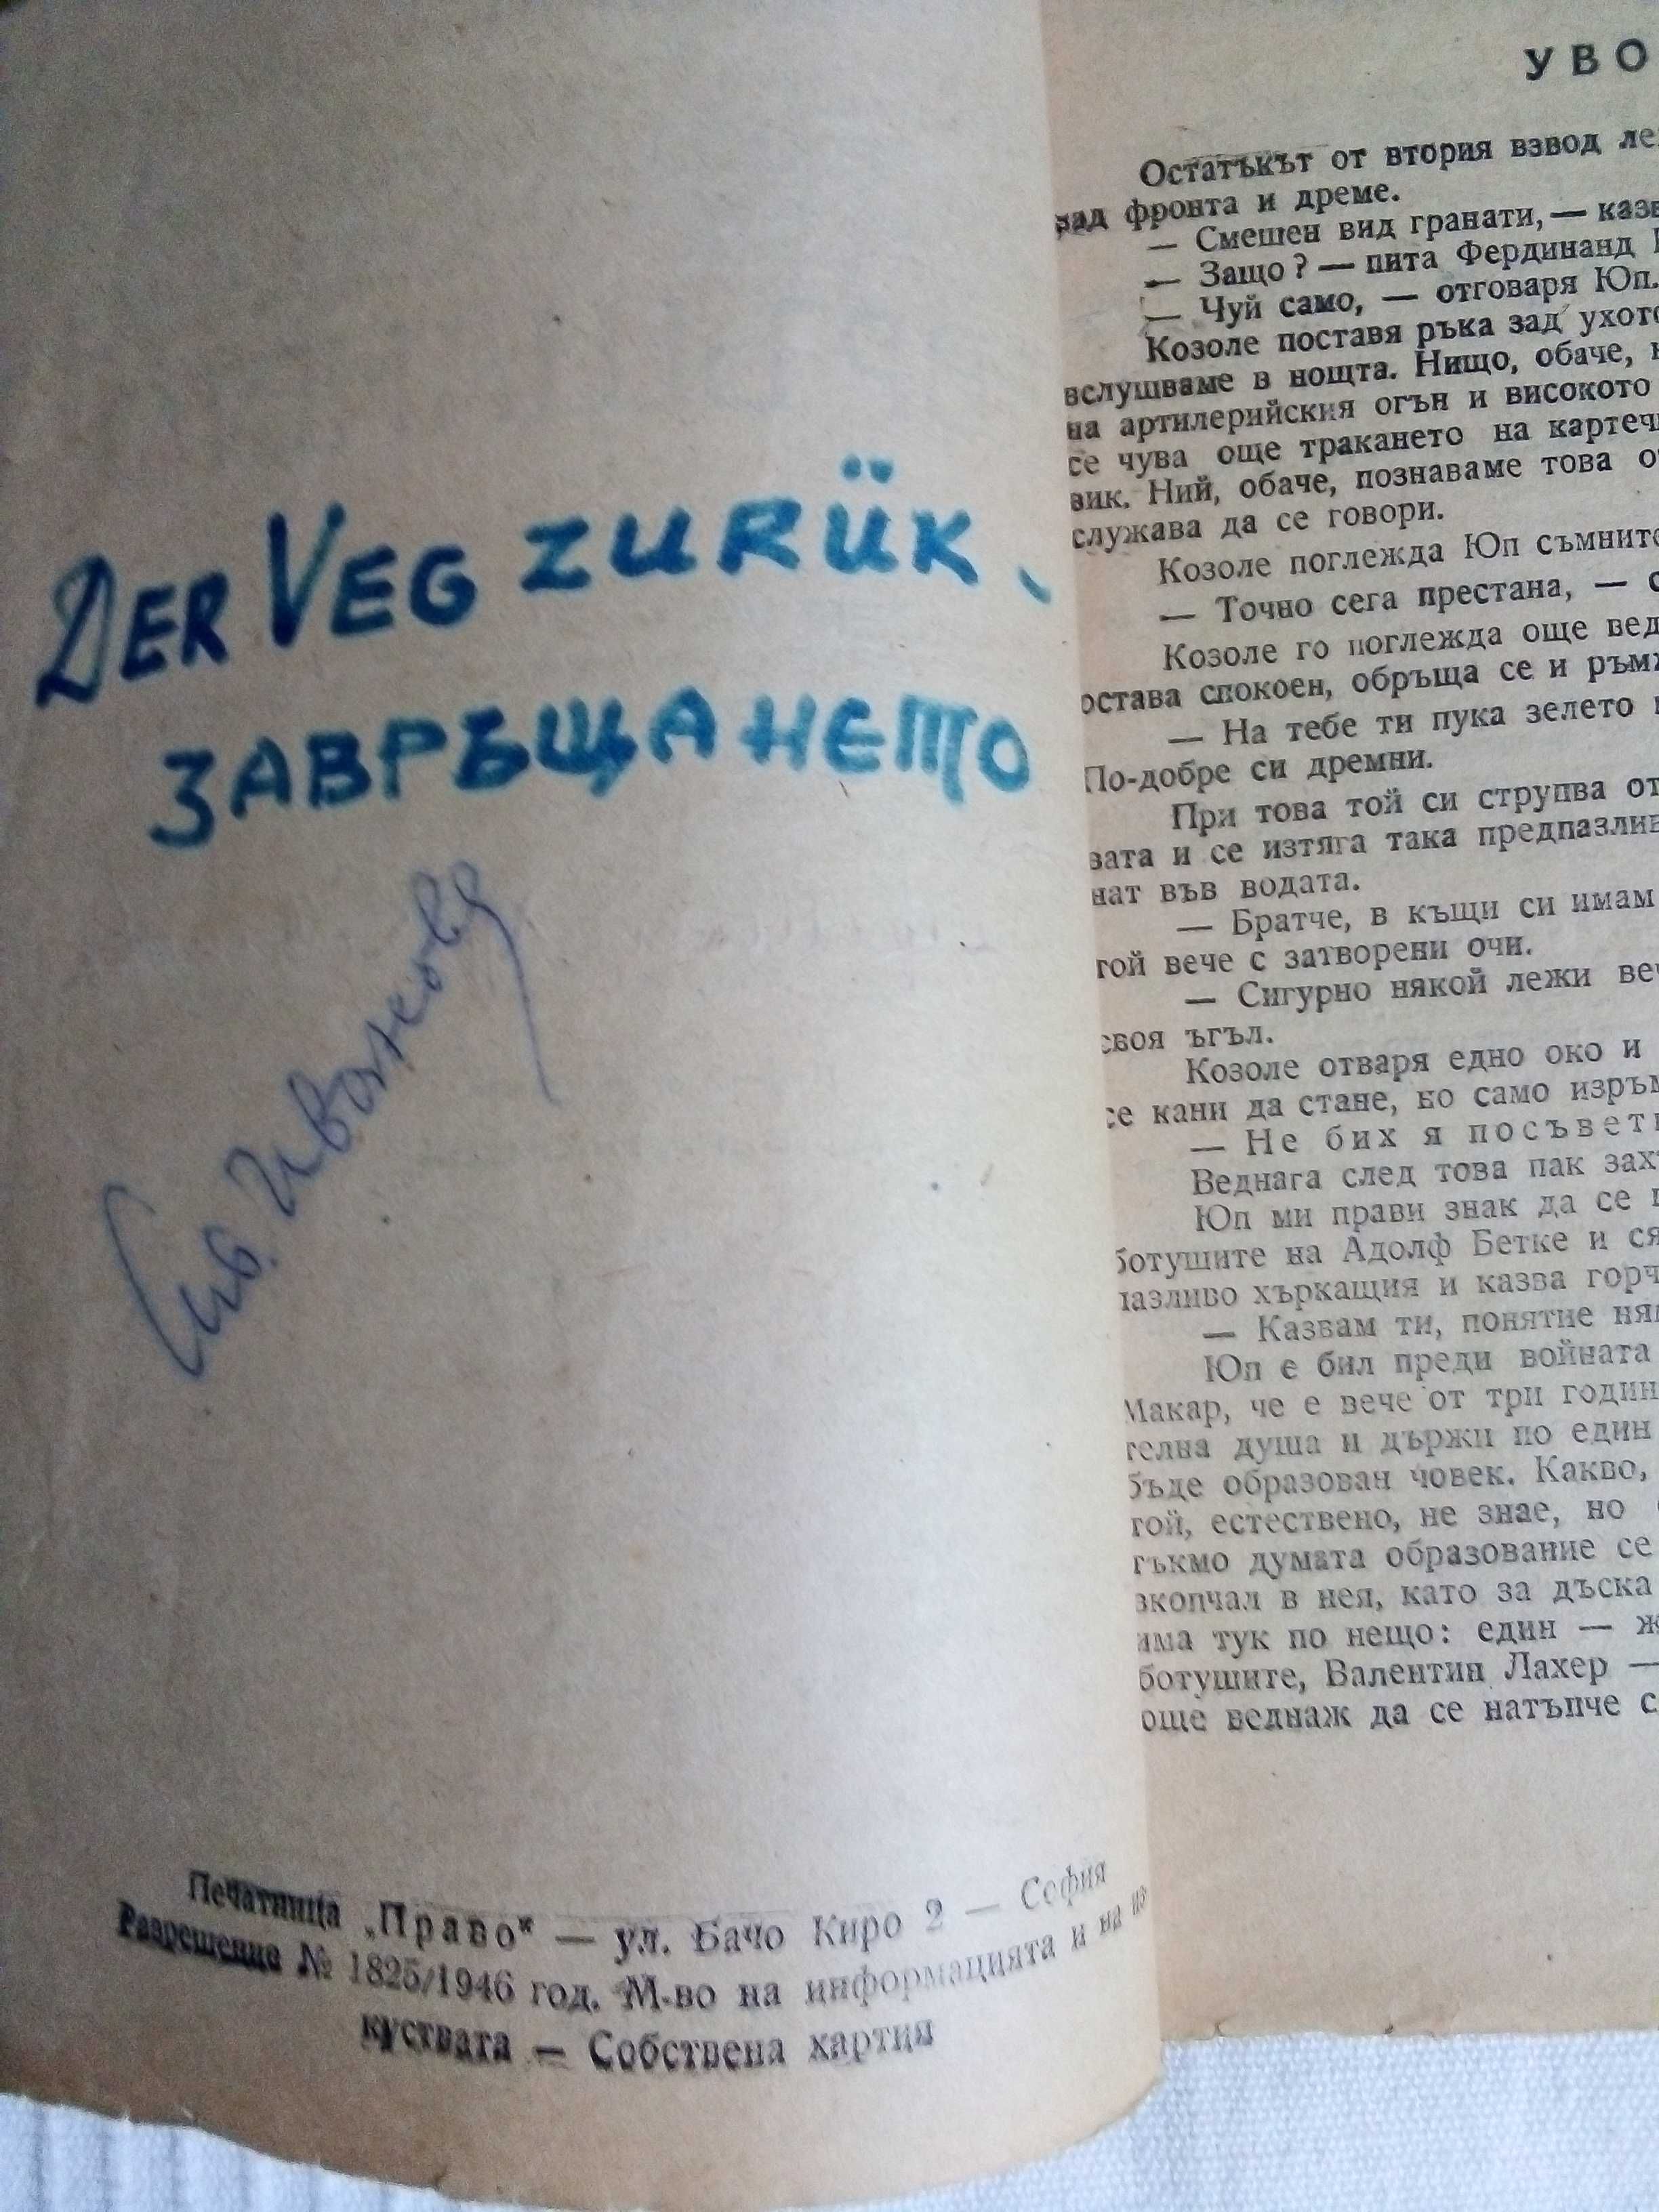 Антикварни книги "Завръщането" Ремарк изд. 1946 година и други